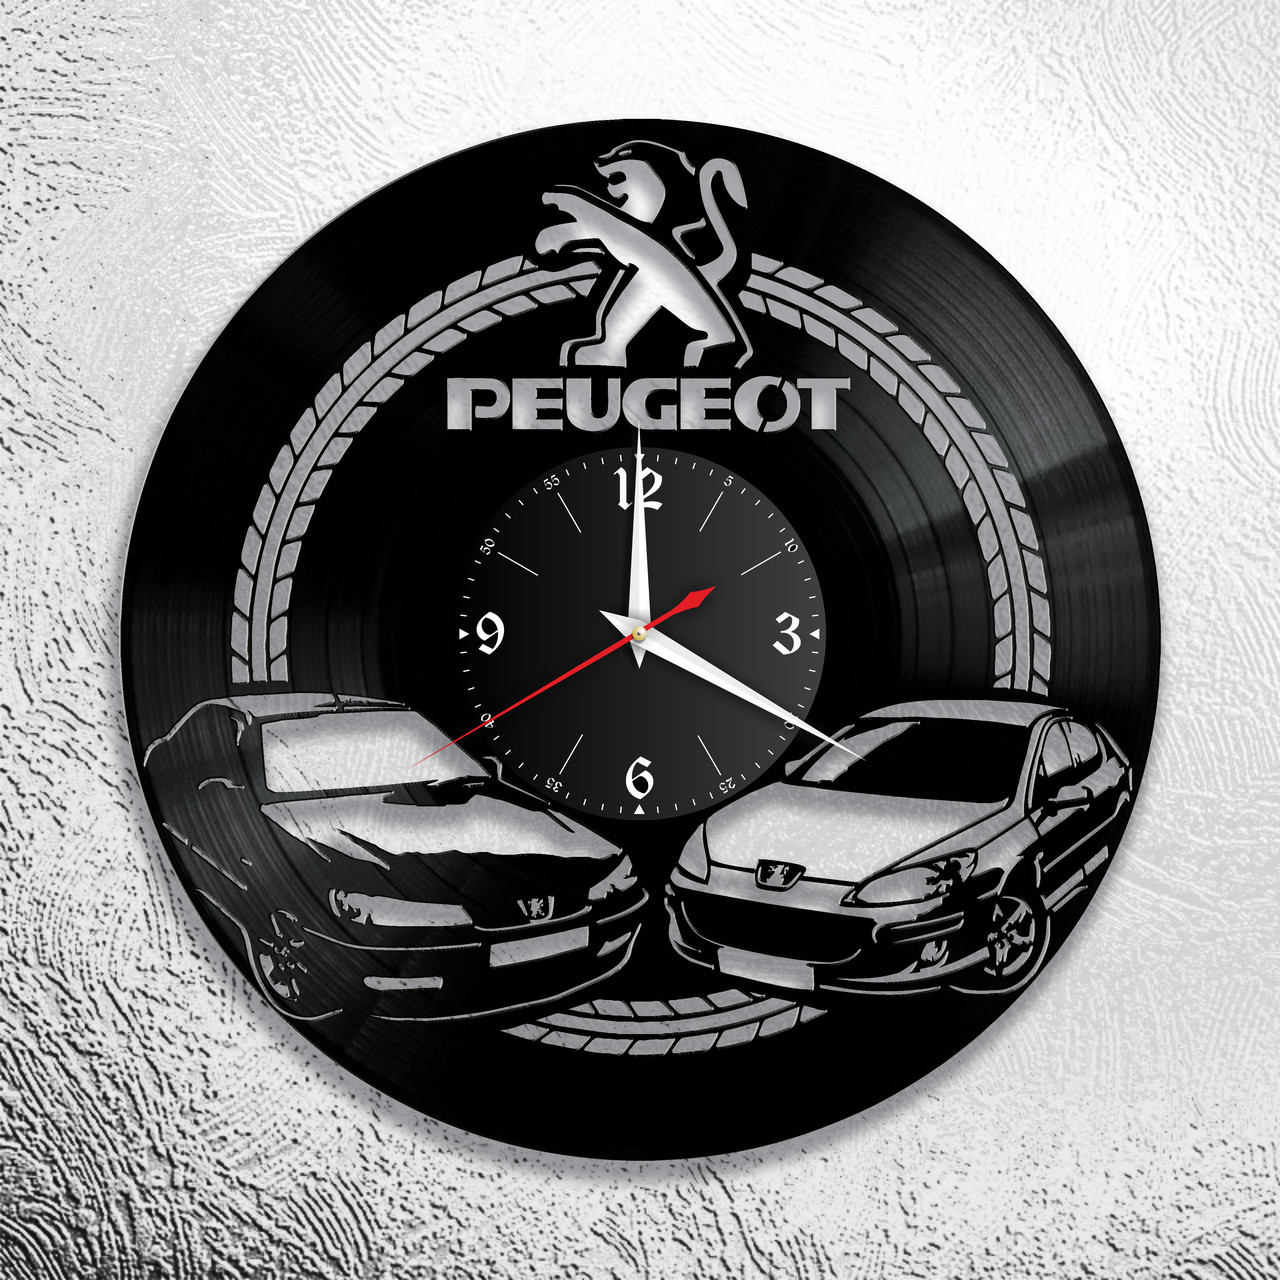 Оригинальные часы из виниловых пластинок  "Peugeot" версия 2